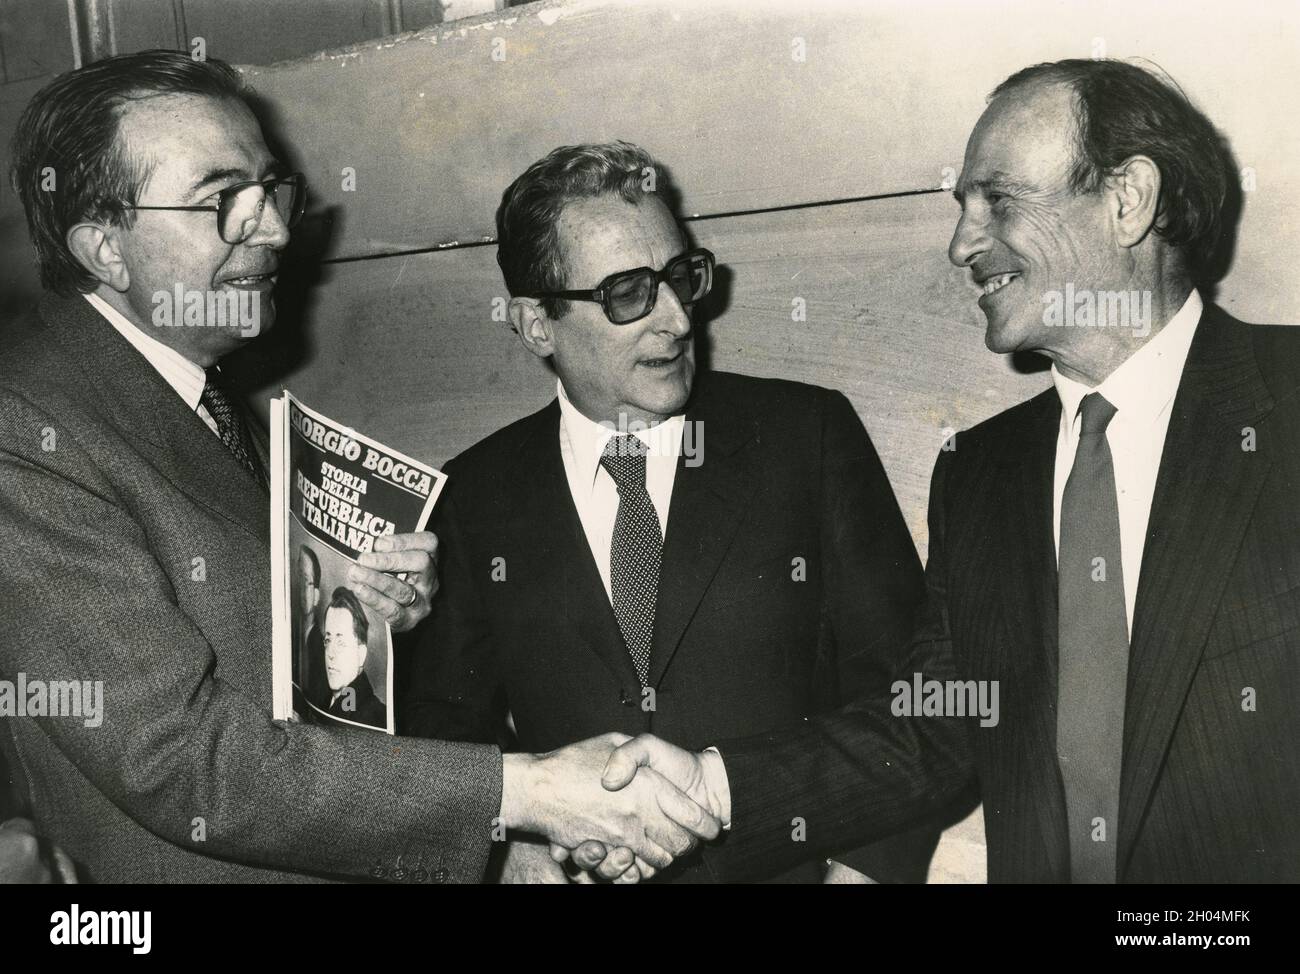 L'écrivain et journaliste italien Giorgio Bocca (à droite) avec les politiciens Giulio Andreotti (à gauche) et Edoardo Perna, années 1970 Banque D'Images